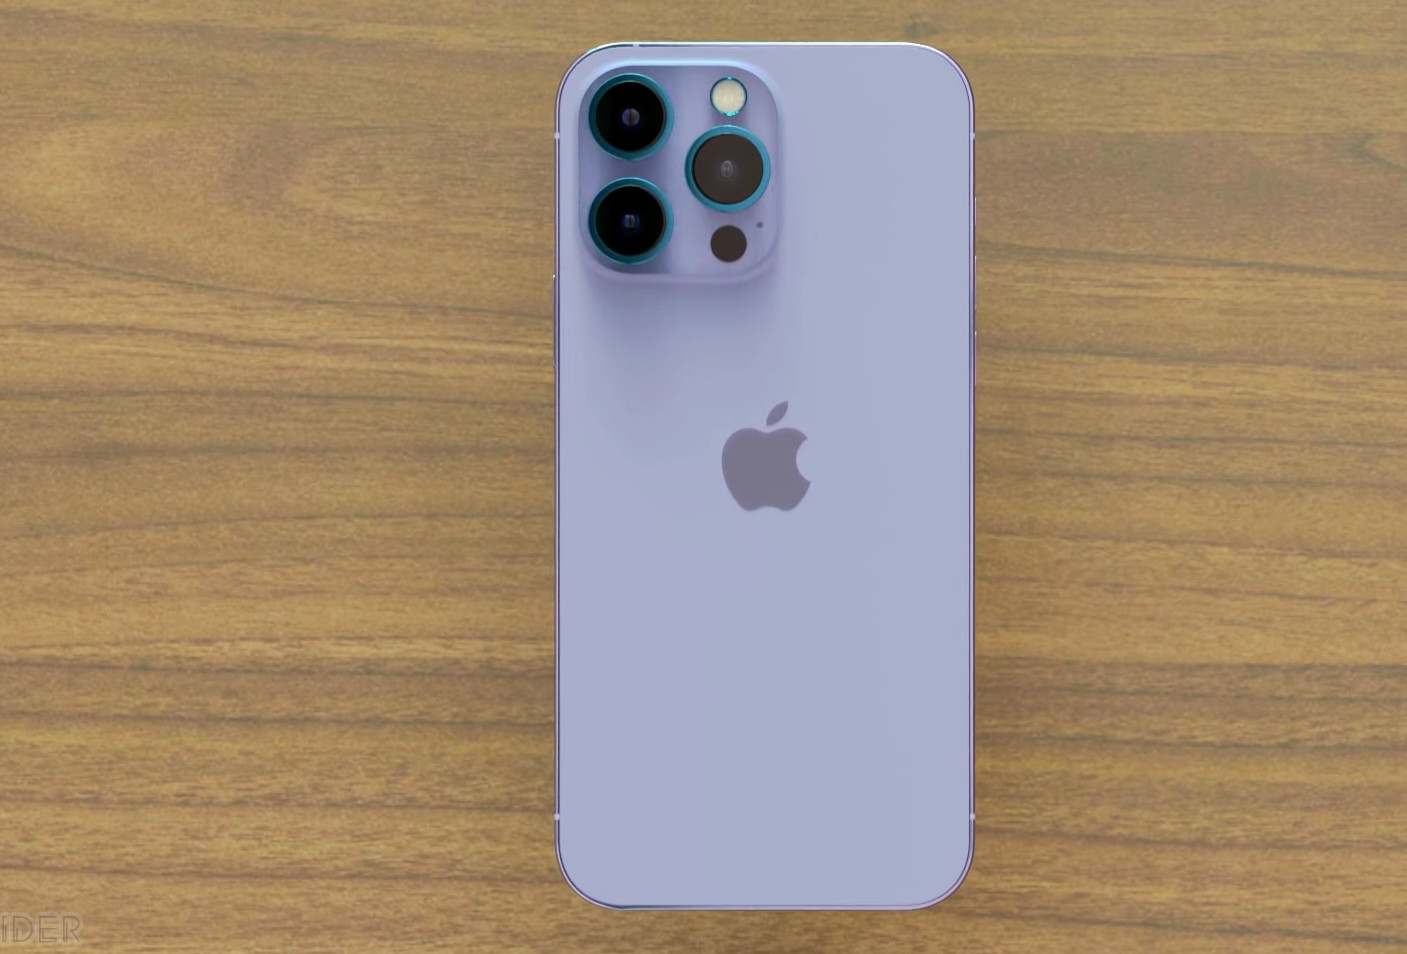 iPhone 14 Pro Max màu tím với thiết kế hoàn hảo và cấu hình ấn tượng là điều không thể bỏ qua trong năm nay. Với màn hình lớn, camera chất lượng cao và thời lượng pin tốt, chiếc điện thoại này đã khiến nhiều người mê mẩn. Hãy đến và xem qua những hình ảnh iPhone 14 Pro Max màu tím để có cái nhìn rõ hơn về sản phẩm này.